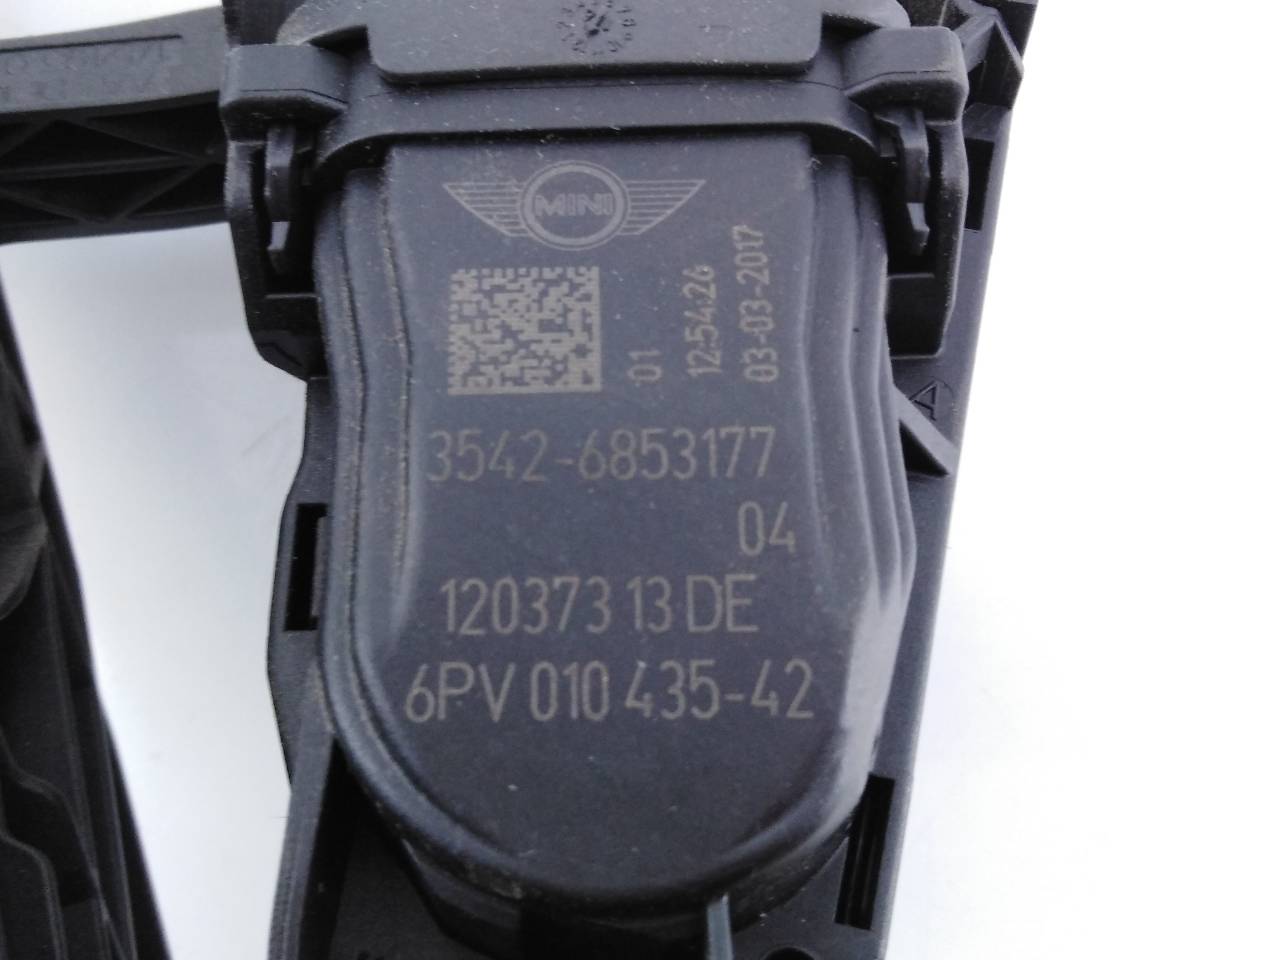 MINI Cooper R56 (2006-2015) Педаль газа 35426853177, 6PV01043542, E3-A2-48-4 18751999